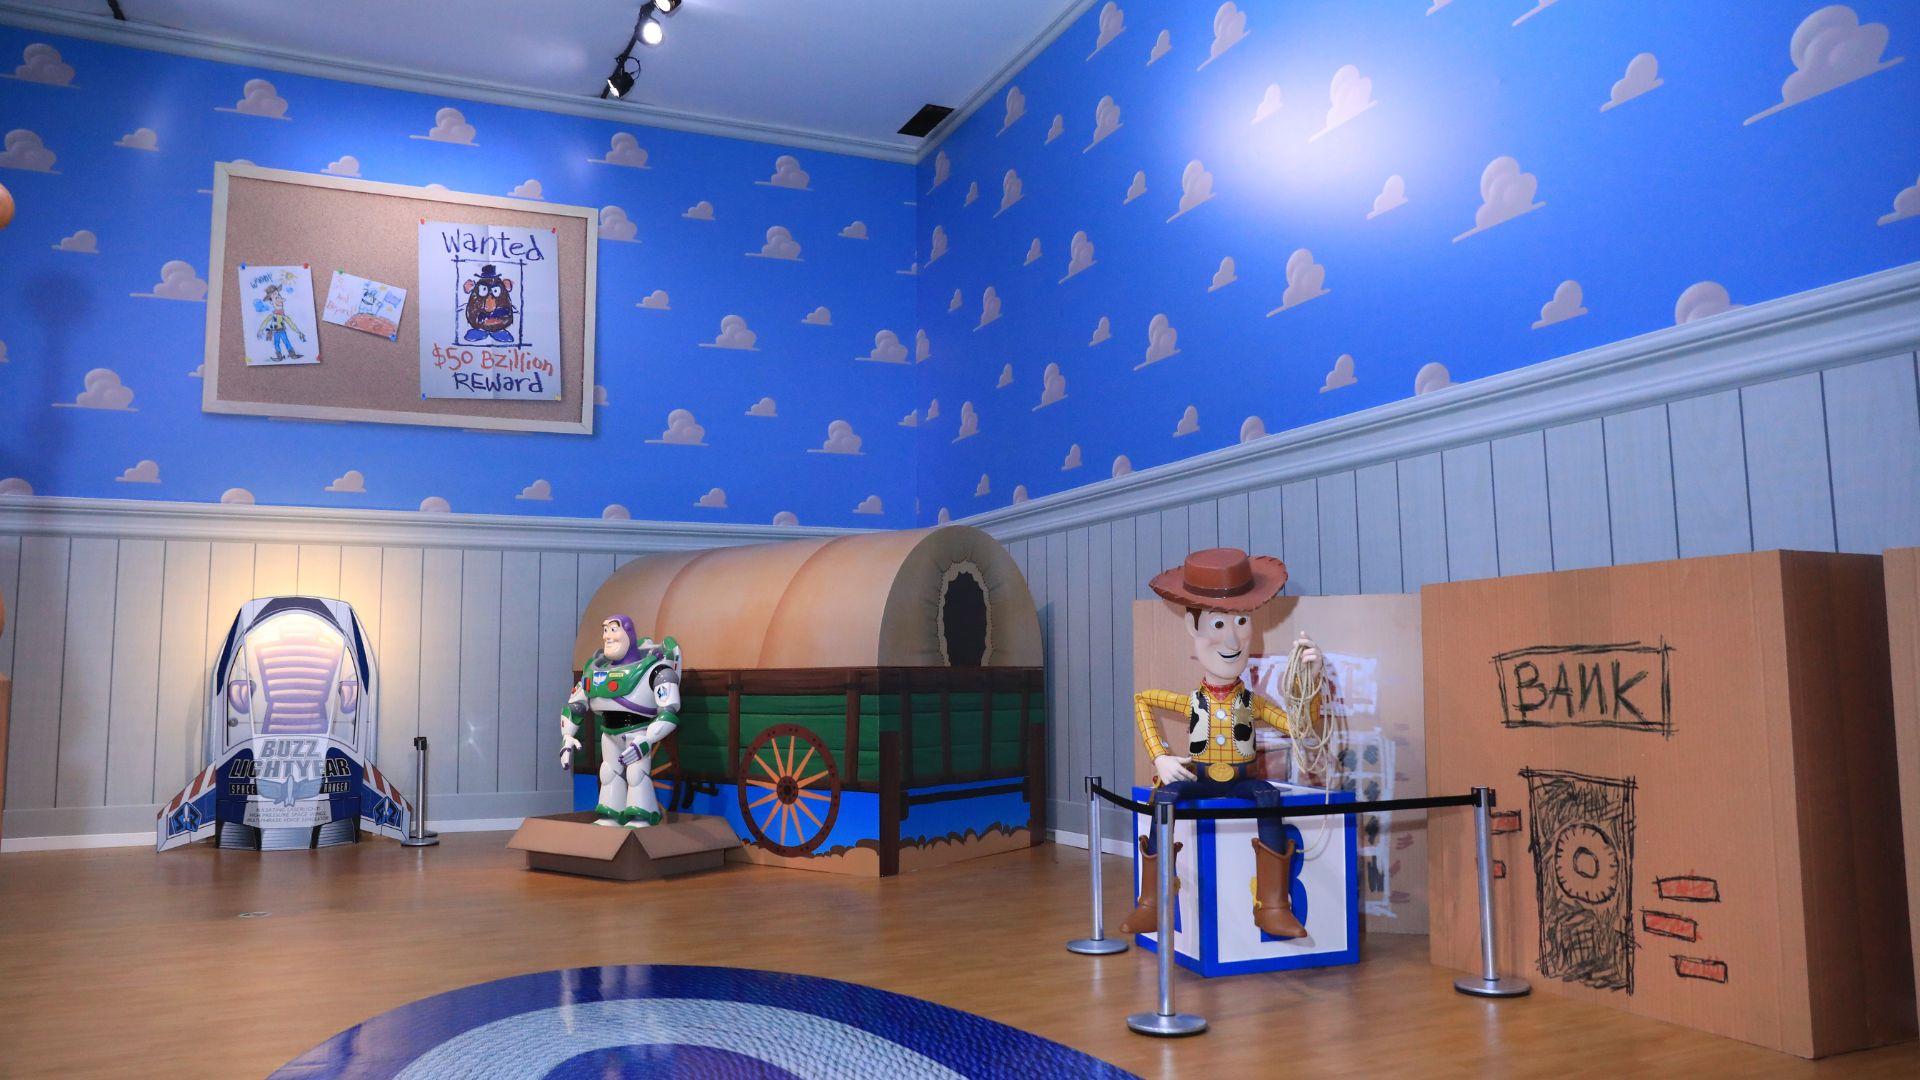 Na exposição "Mundo Pixar", é possível visitar uma réplica do quarto do Andy e se sentir um brinquedo, assim como Woody e Buzz Lightyear (Foto: Divulgação)